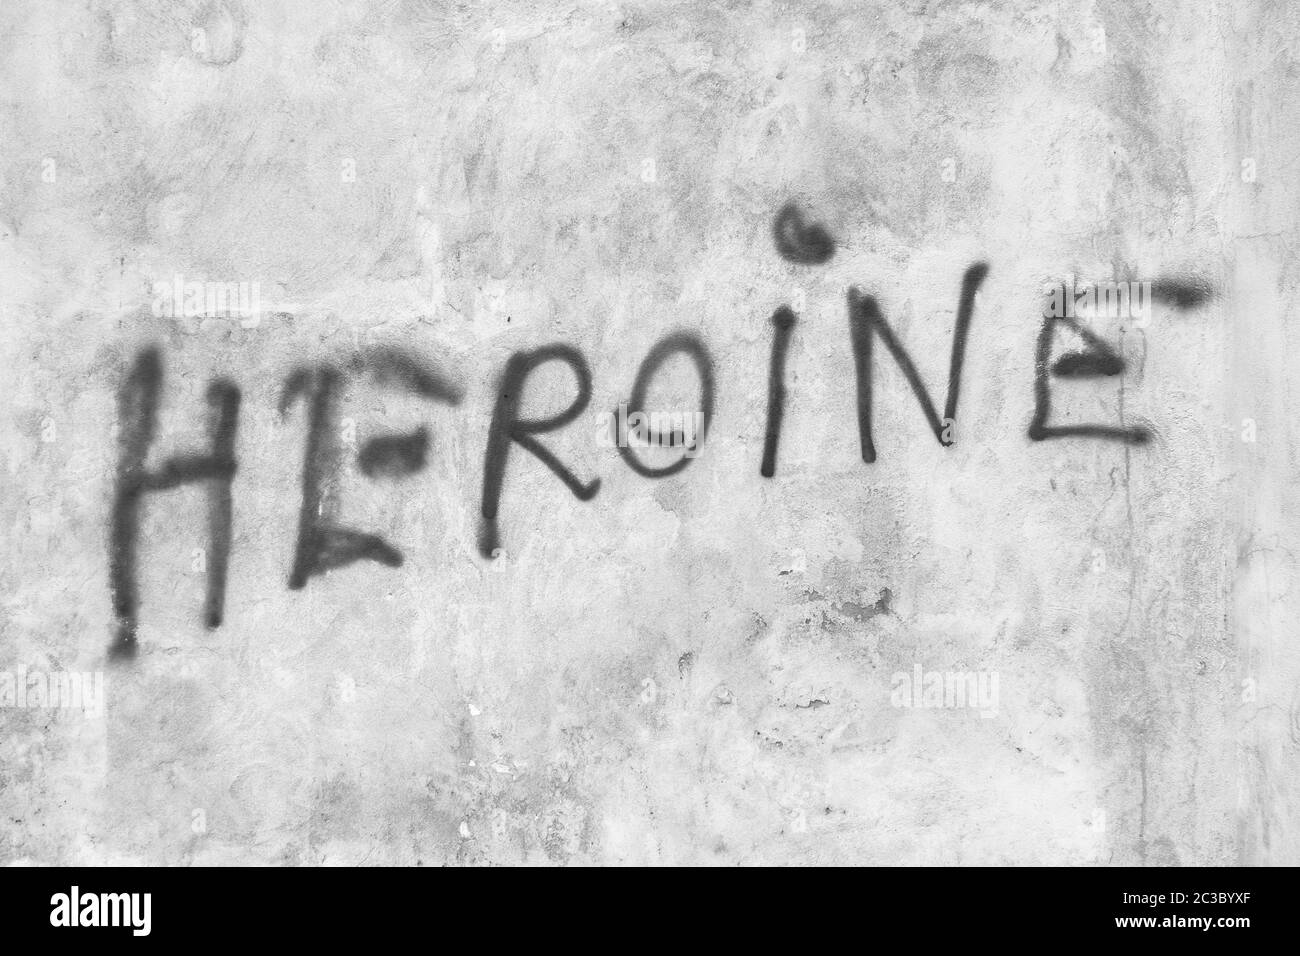 Heroine written on the wall Stock Photo